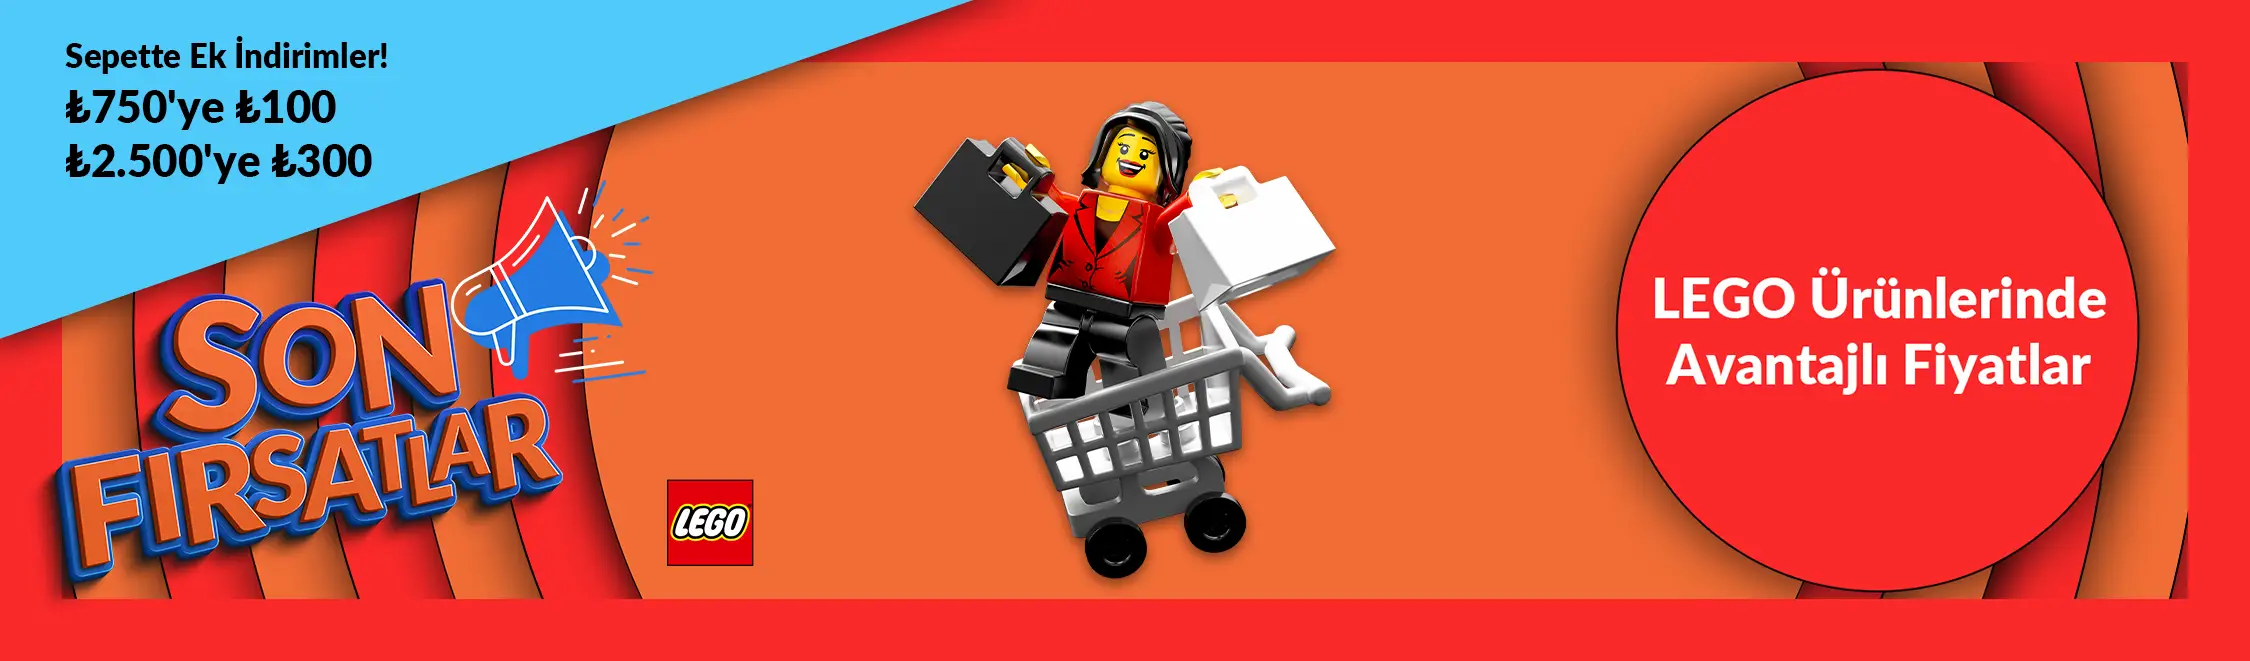 LEGO Ürünlerinde Avantajlı Fiyatlar